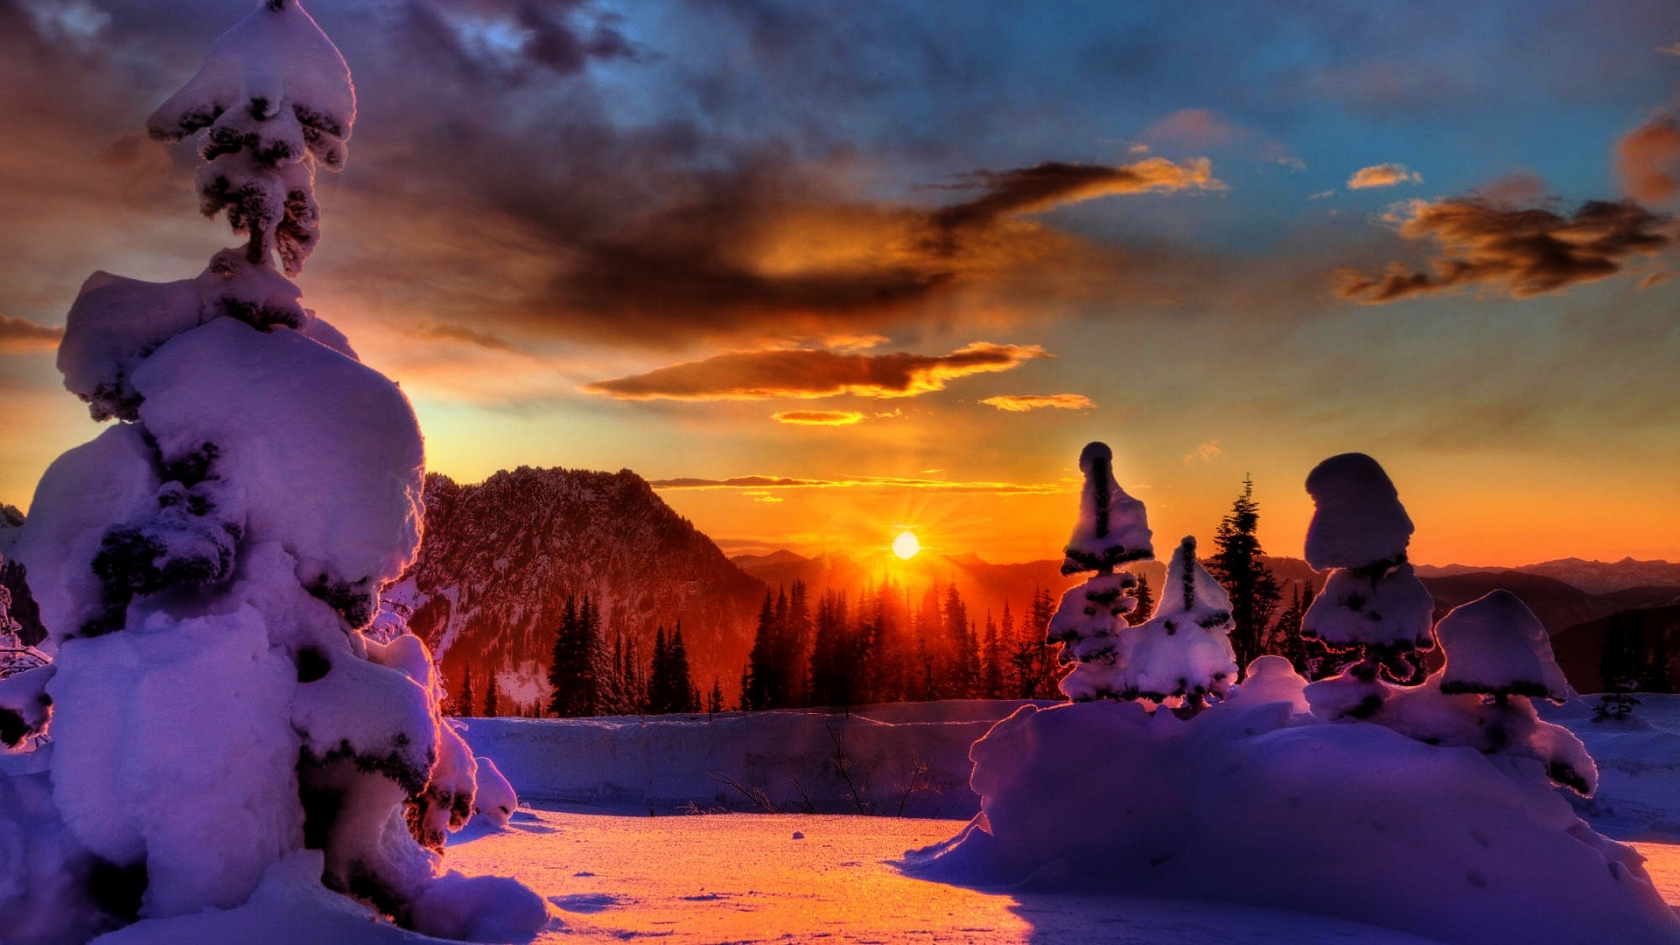 Winter Sunset for 1680 x 945 HDTV resolution